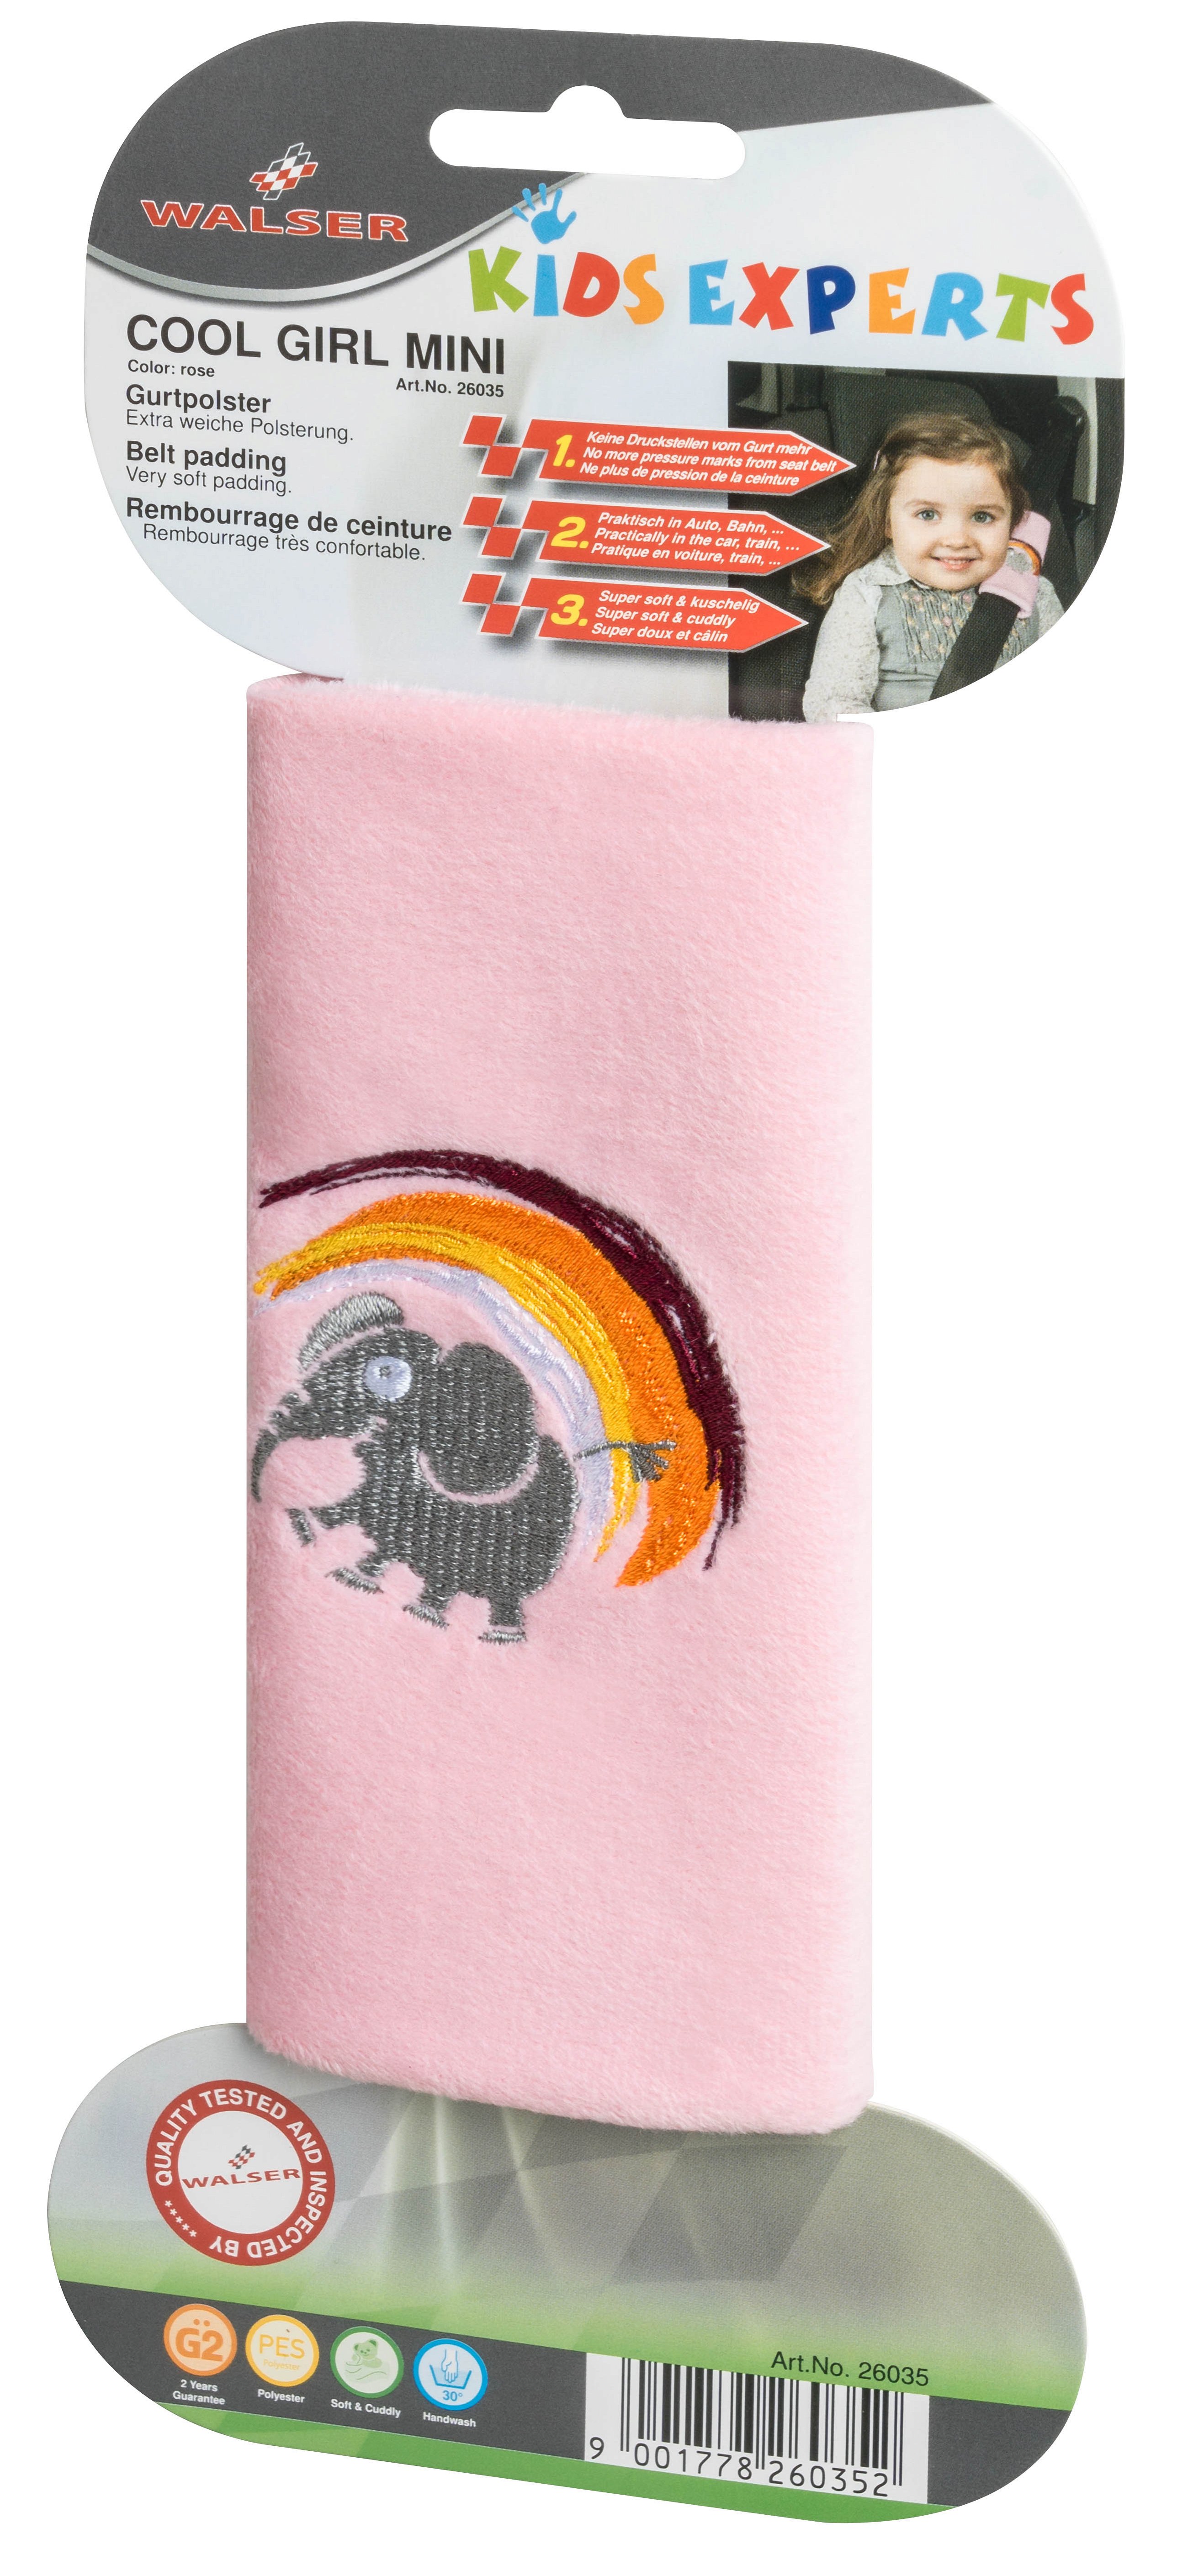 Cool Girl Mini harnasbeschermer roze van 3-4 jaar